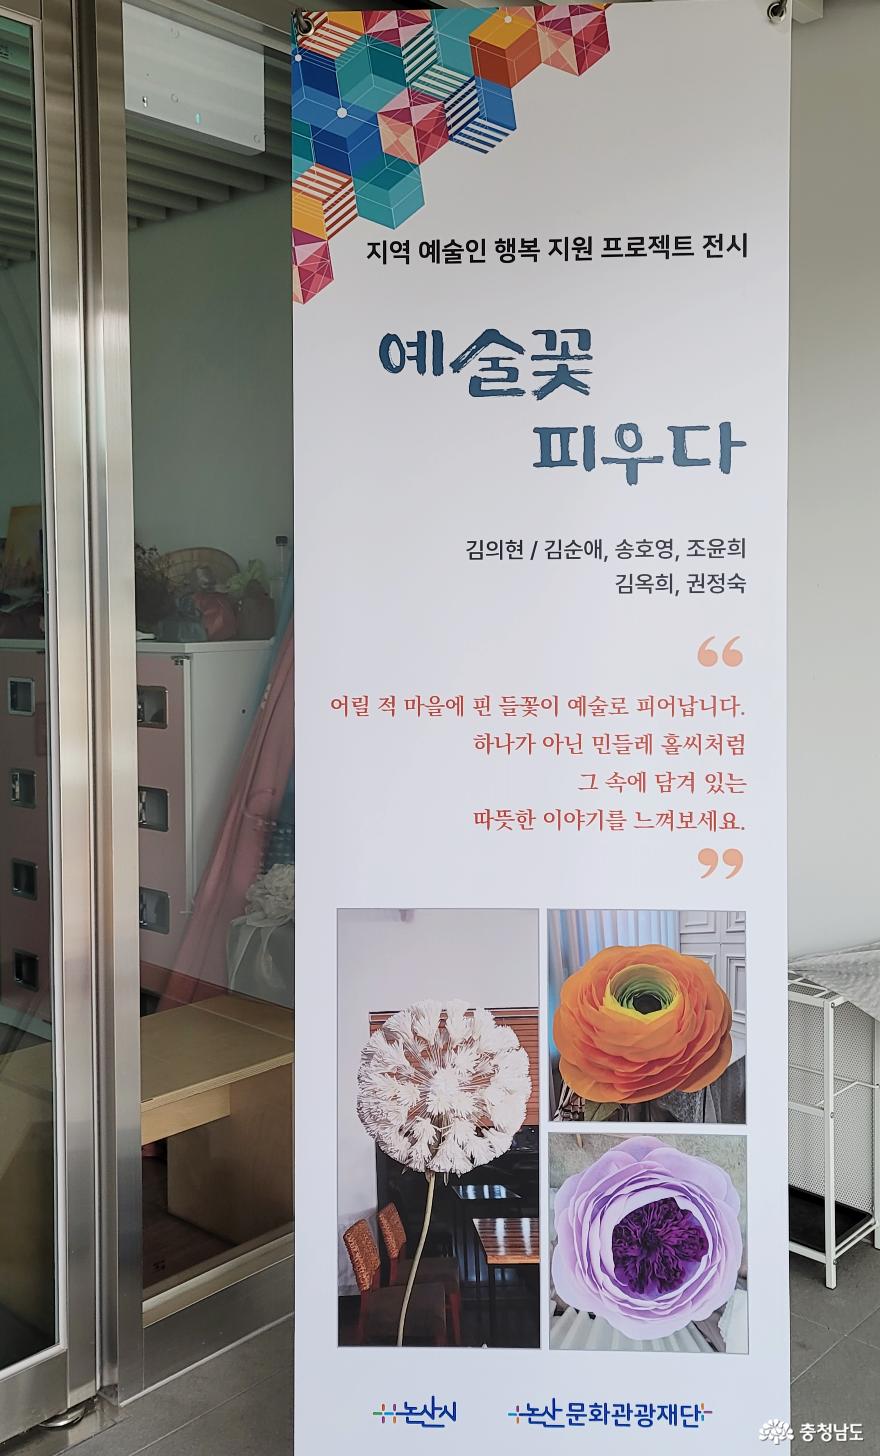 예술꽃 피우다 - 논산시 지역 예술인 행복지원 프로젝트(숩쏙) 사진